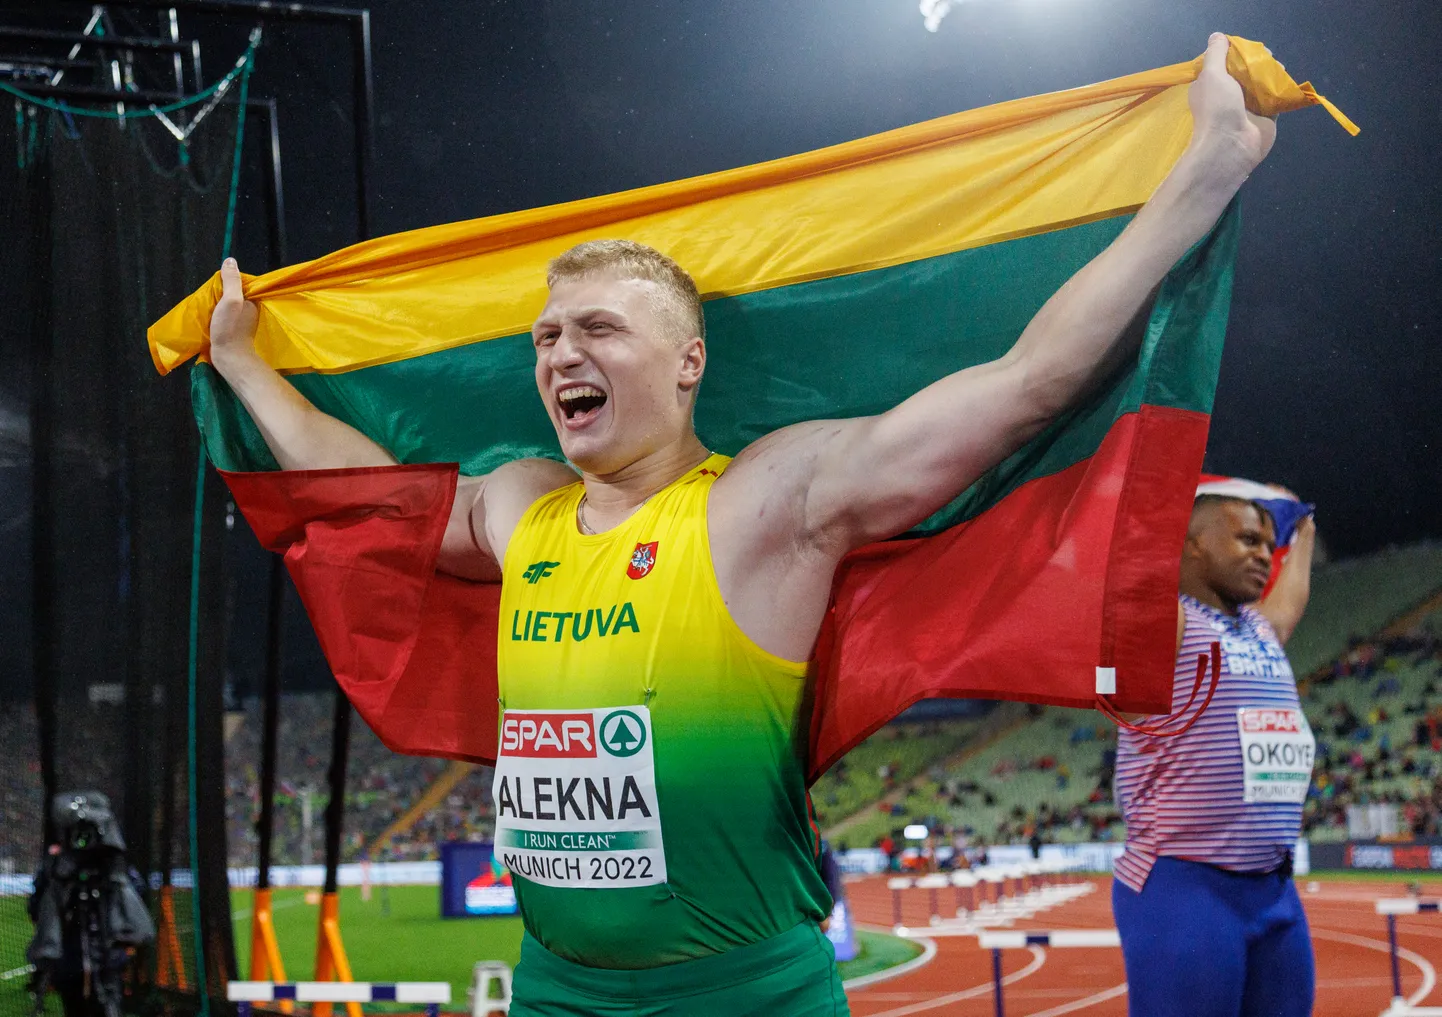 Tänavu maailmarekordi püstitanud Mykolas Alekna heidab neljapäeval ketast Jõhvi staadionil.